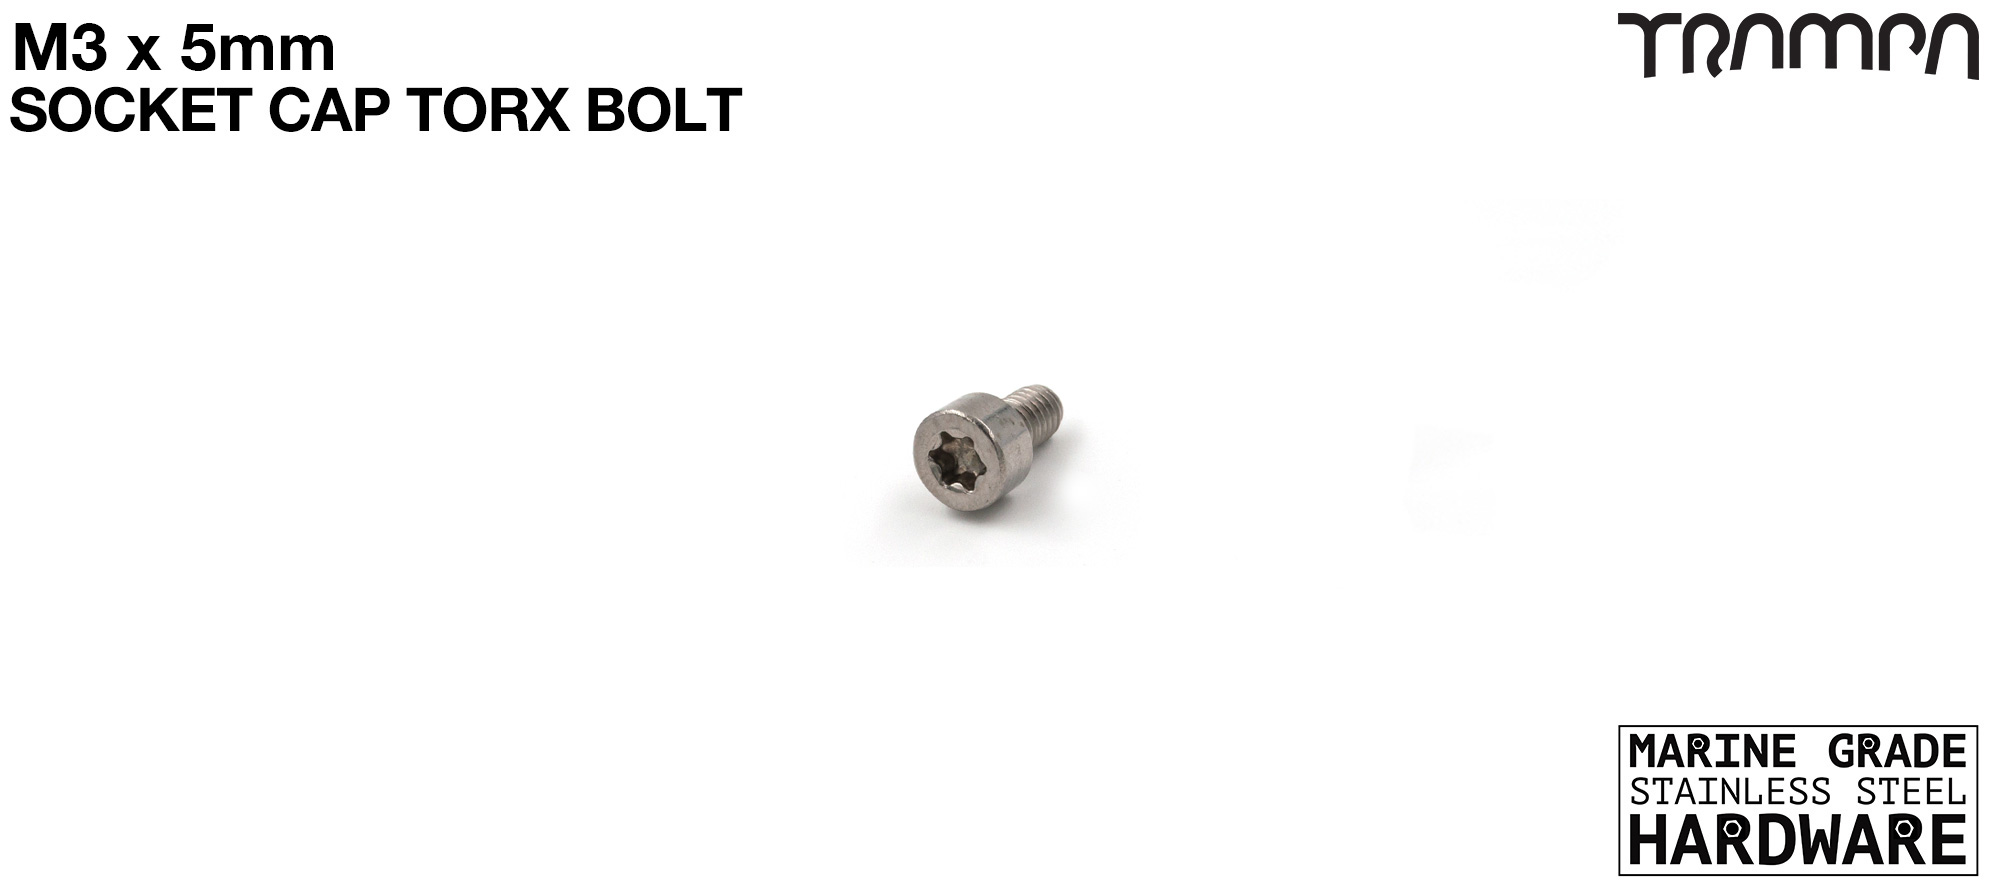 M3 x 5mm Socket Cap TORX Bolt 